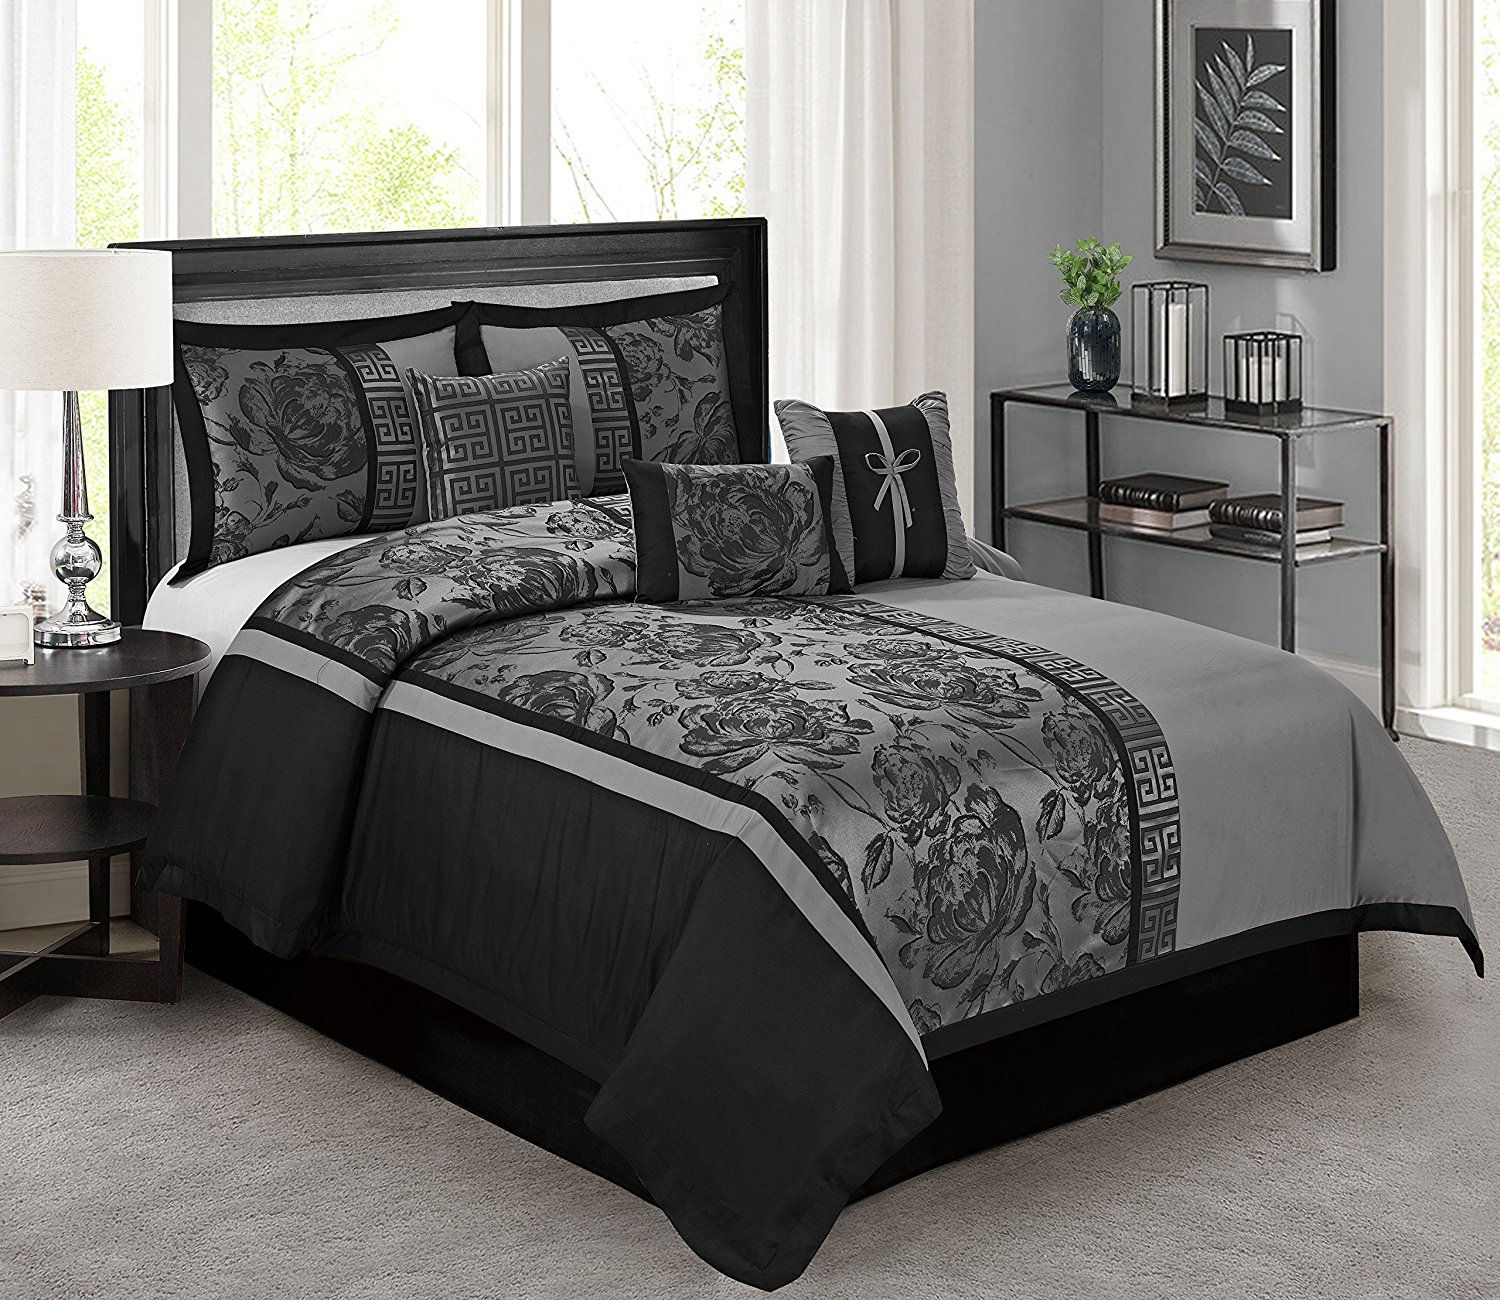 HIG 7 Piece Gray Jacquard Patchwork Comforter Set - Floral Pattern